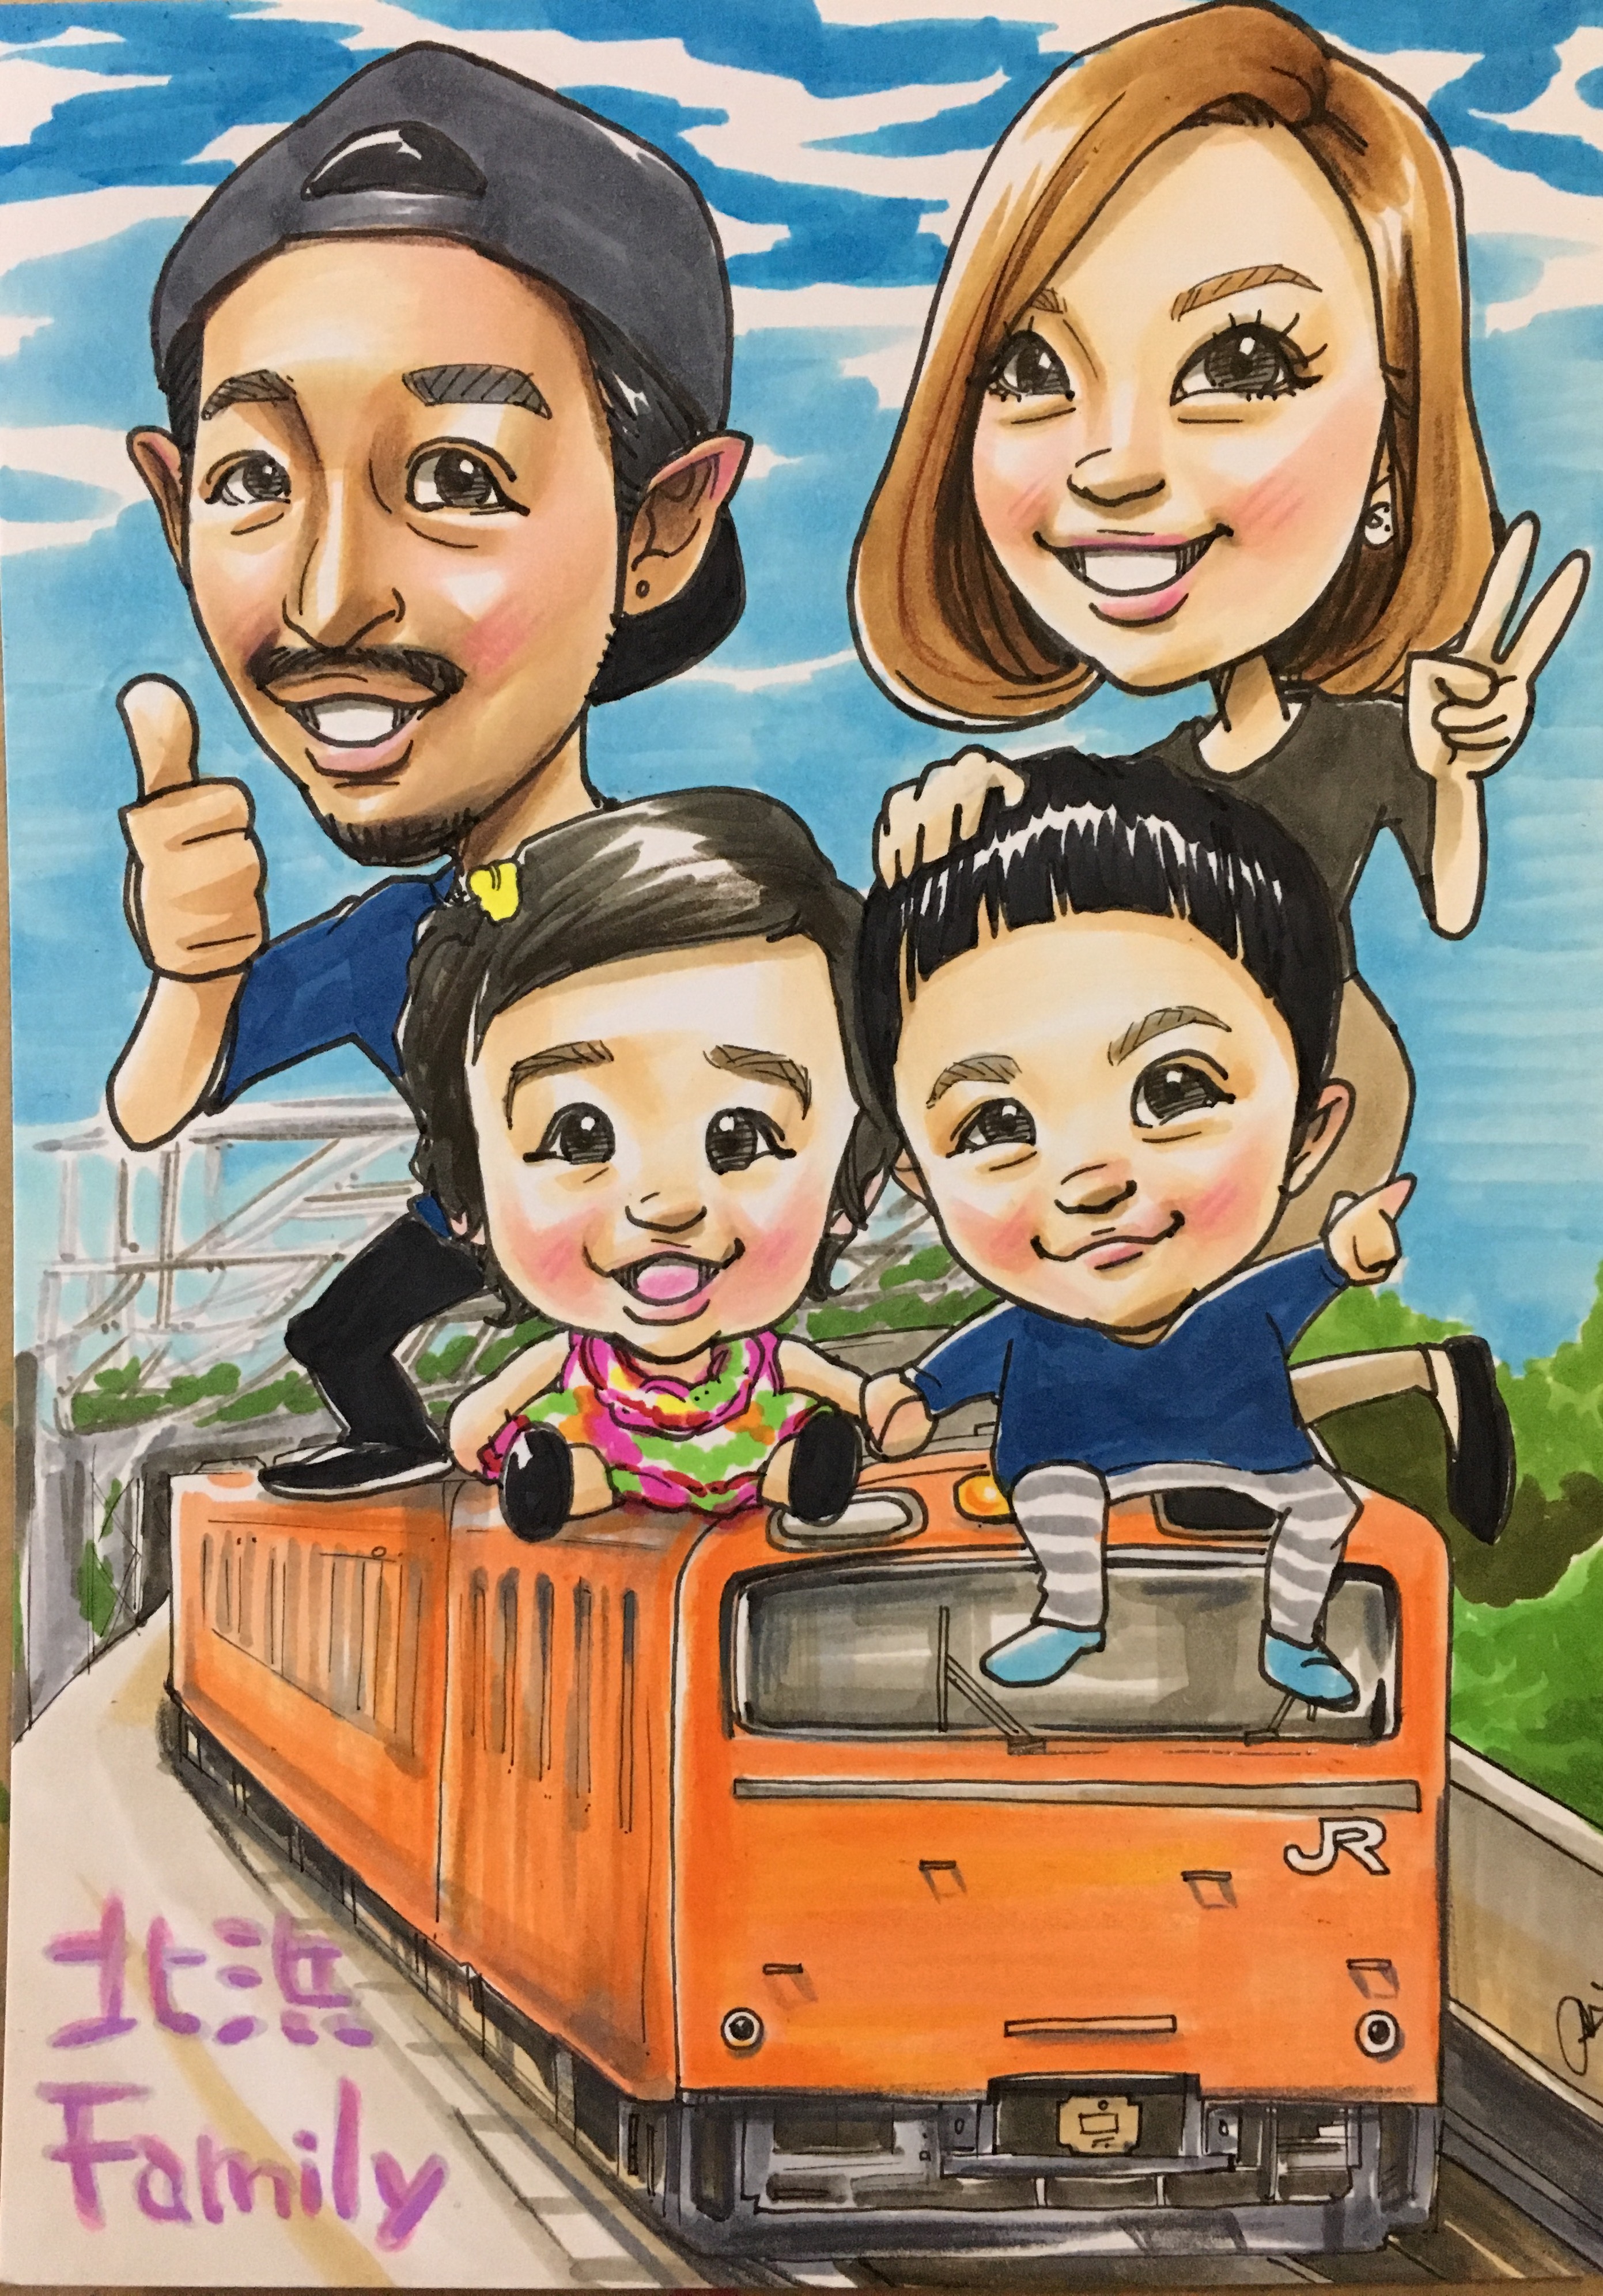 青空を背景にオレンジ色の電車に乗ったご家族を描いた、旦那様へのサプライズプレゼント似顔絵